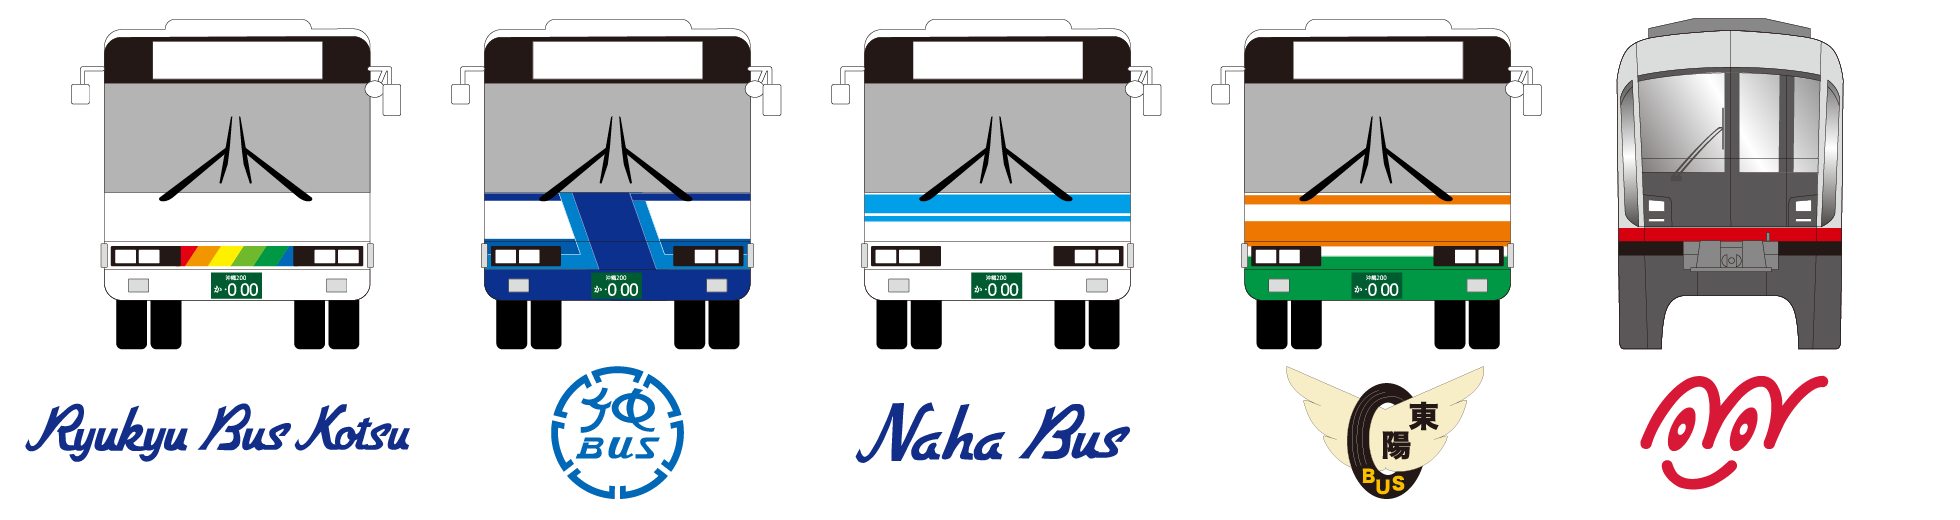 使用对象路线巴士:111路、117路、机场巴士、定期观光巴士除外。琉球巴士、冲绳巴士、那霸巴士、东阳巴士的所有线路。